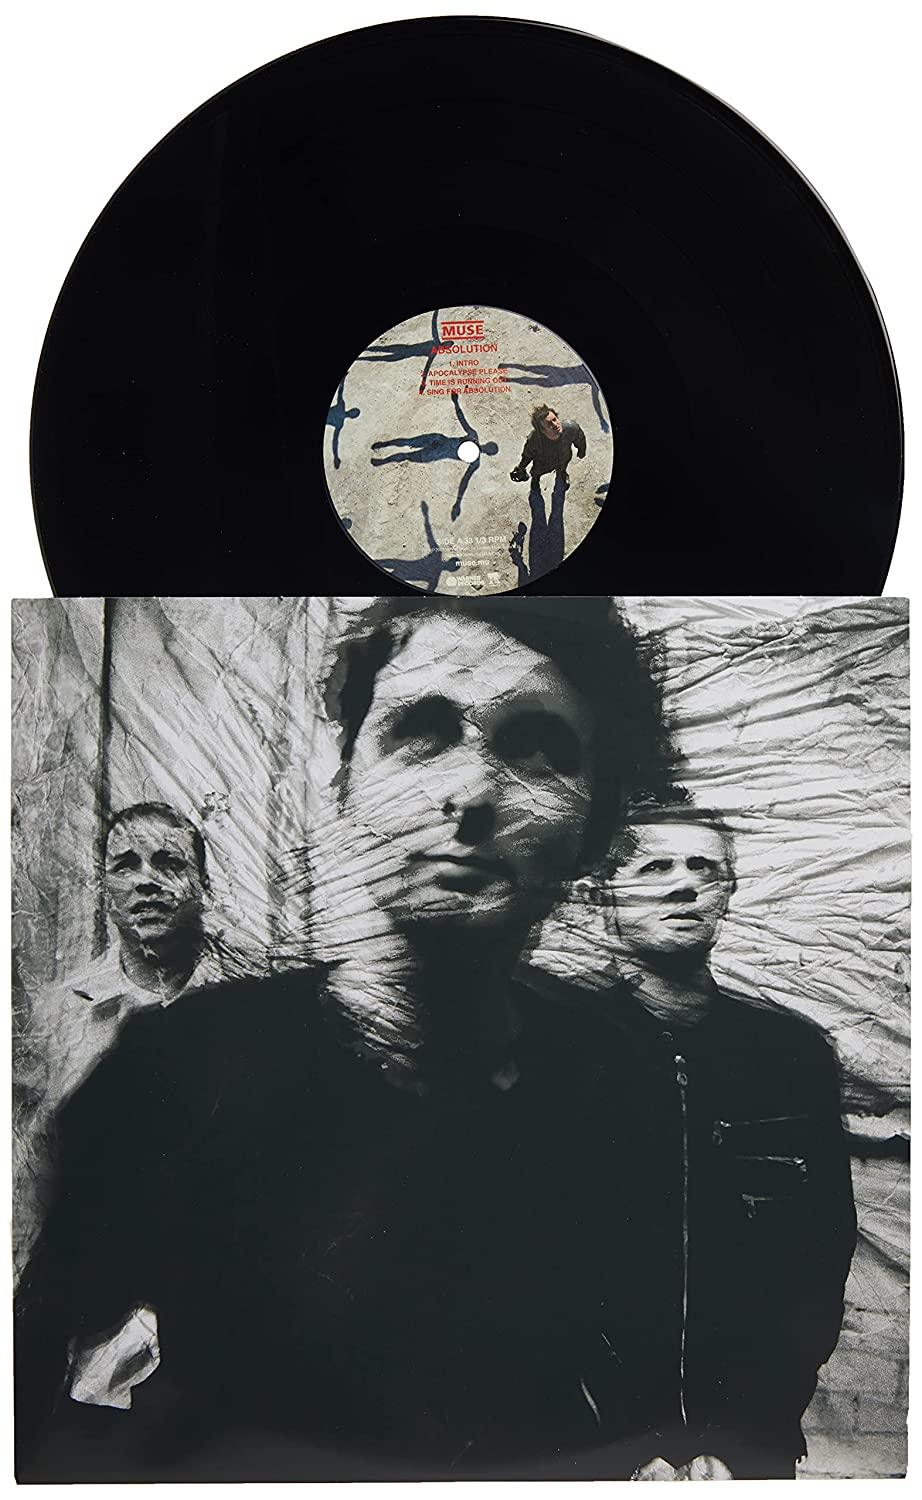  Muse - Resistance [LP] (Vinyl/LP)